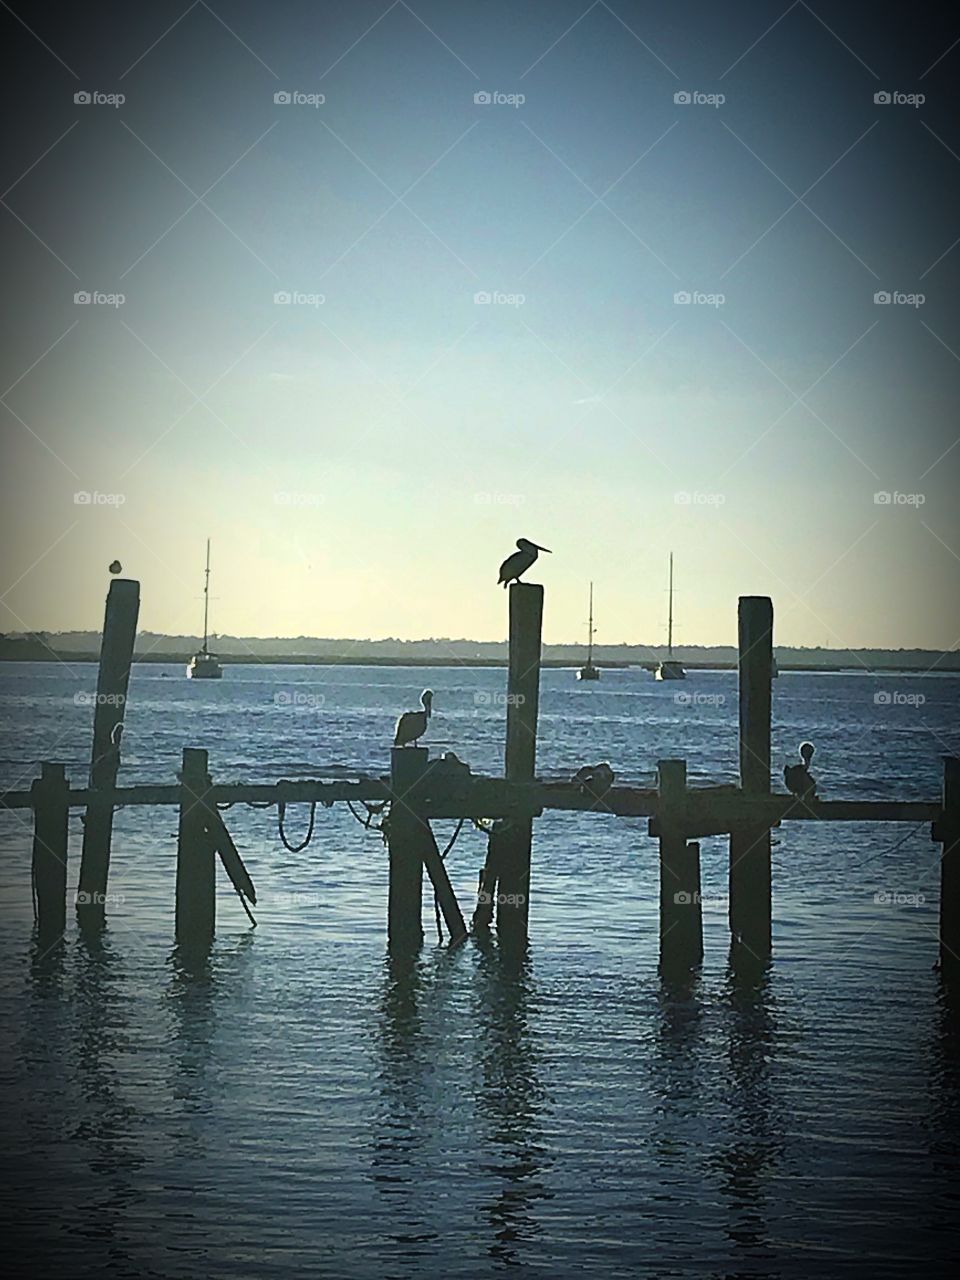 Pelicans at the docks - Fernandina Beach Florida 